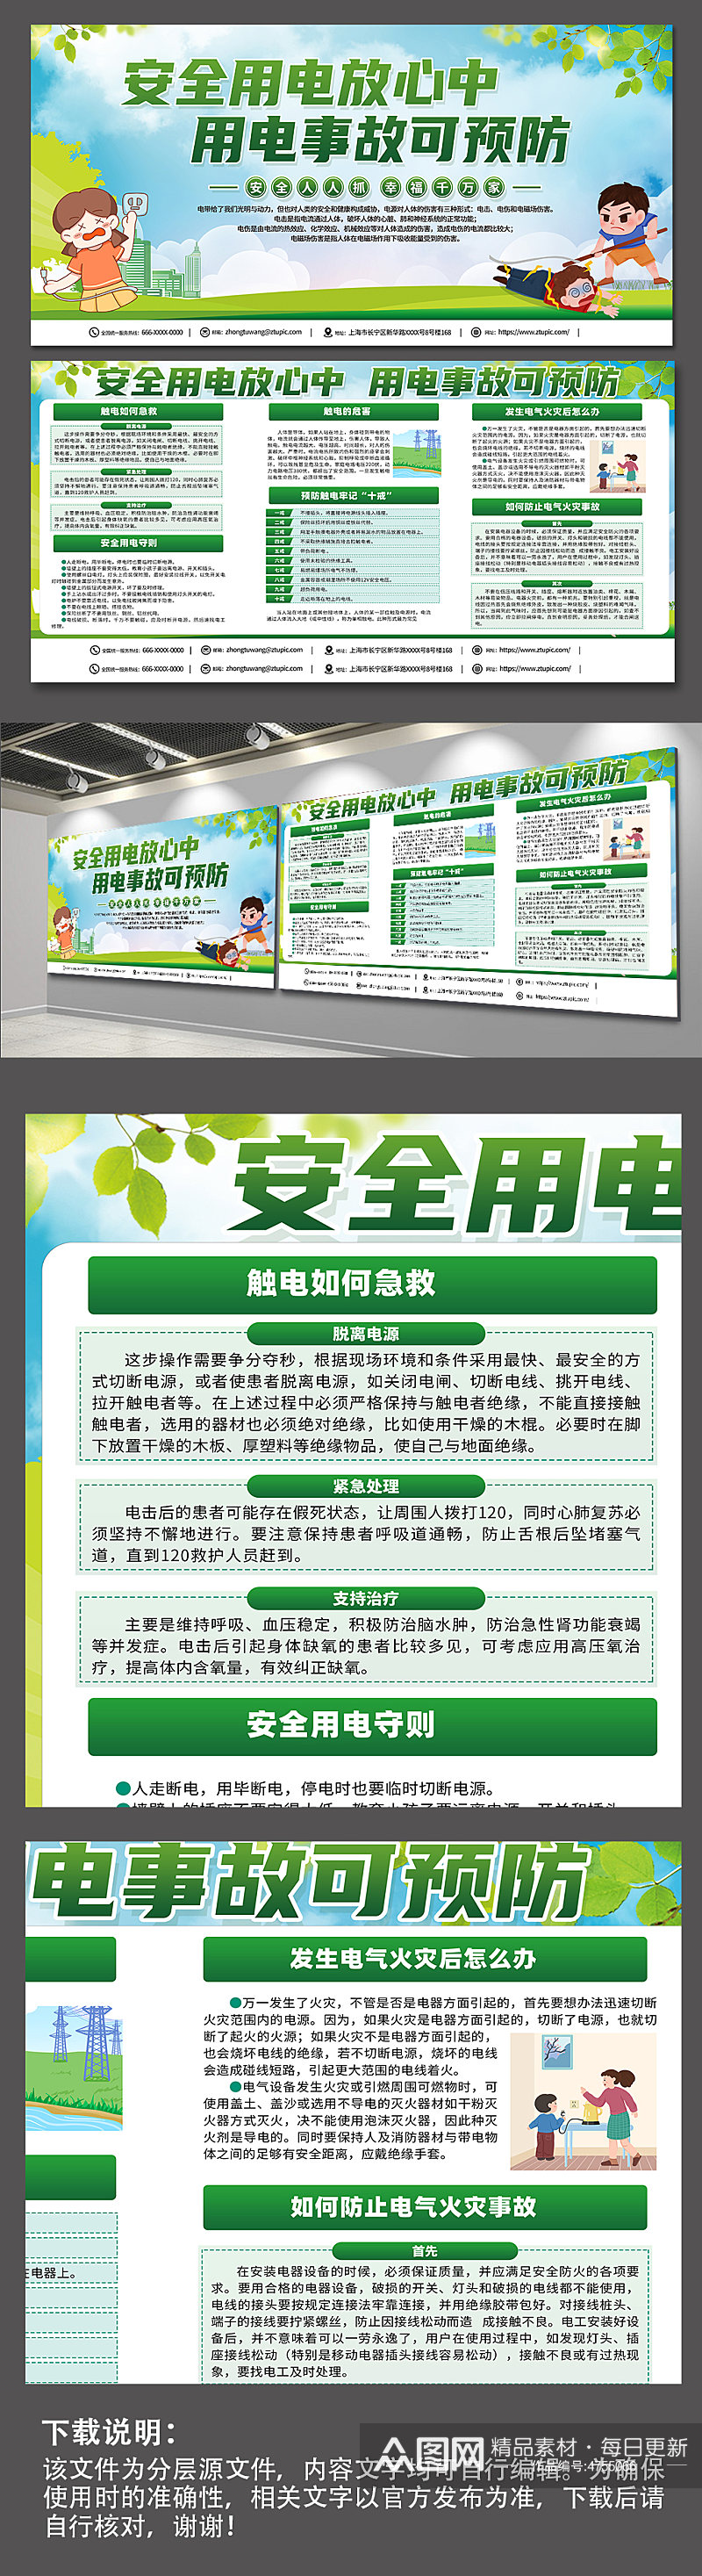 绿色安全用电知识宣传栏展板设计素材